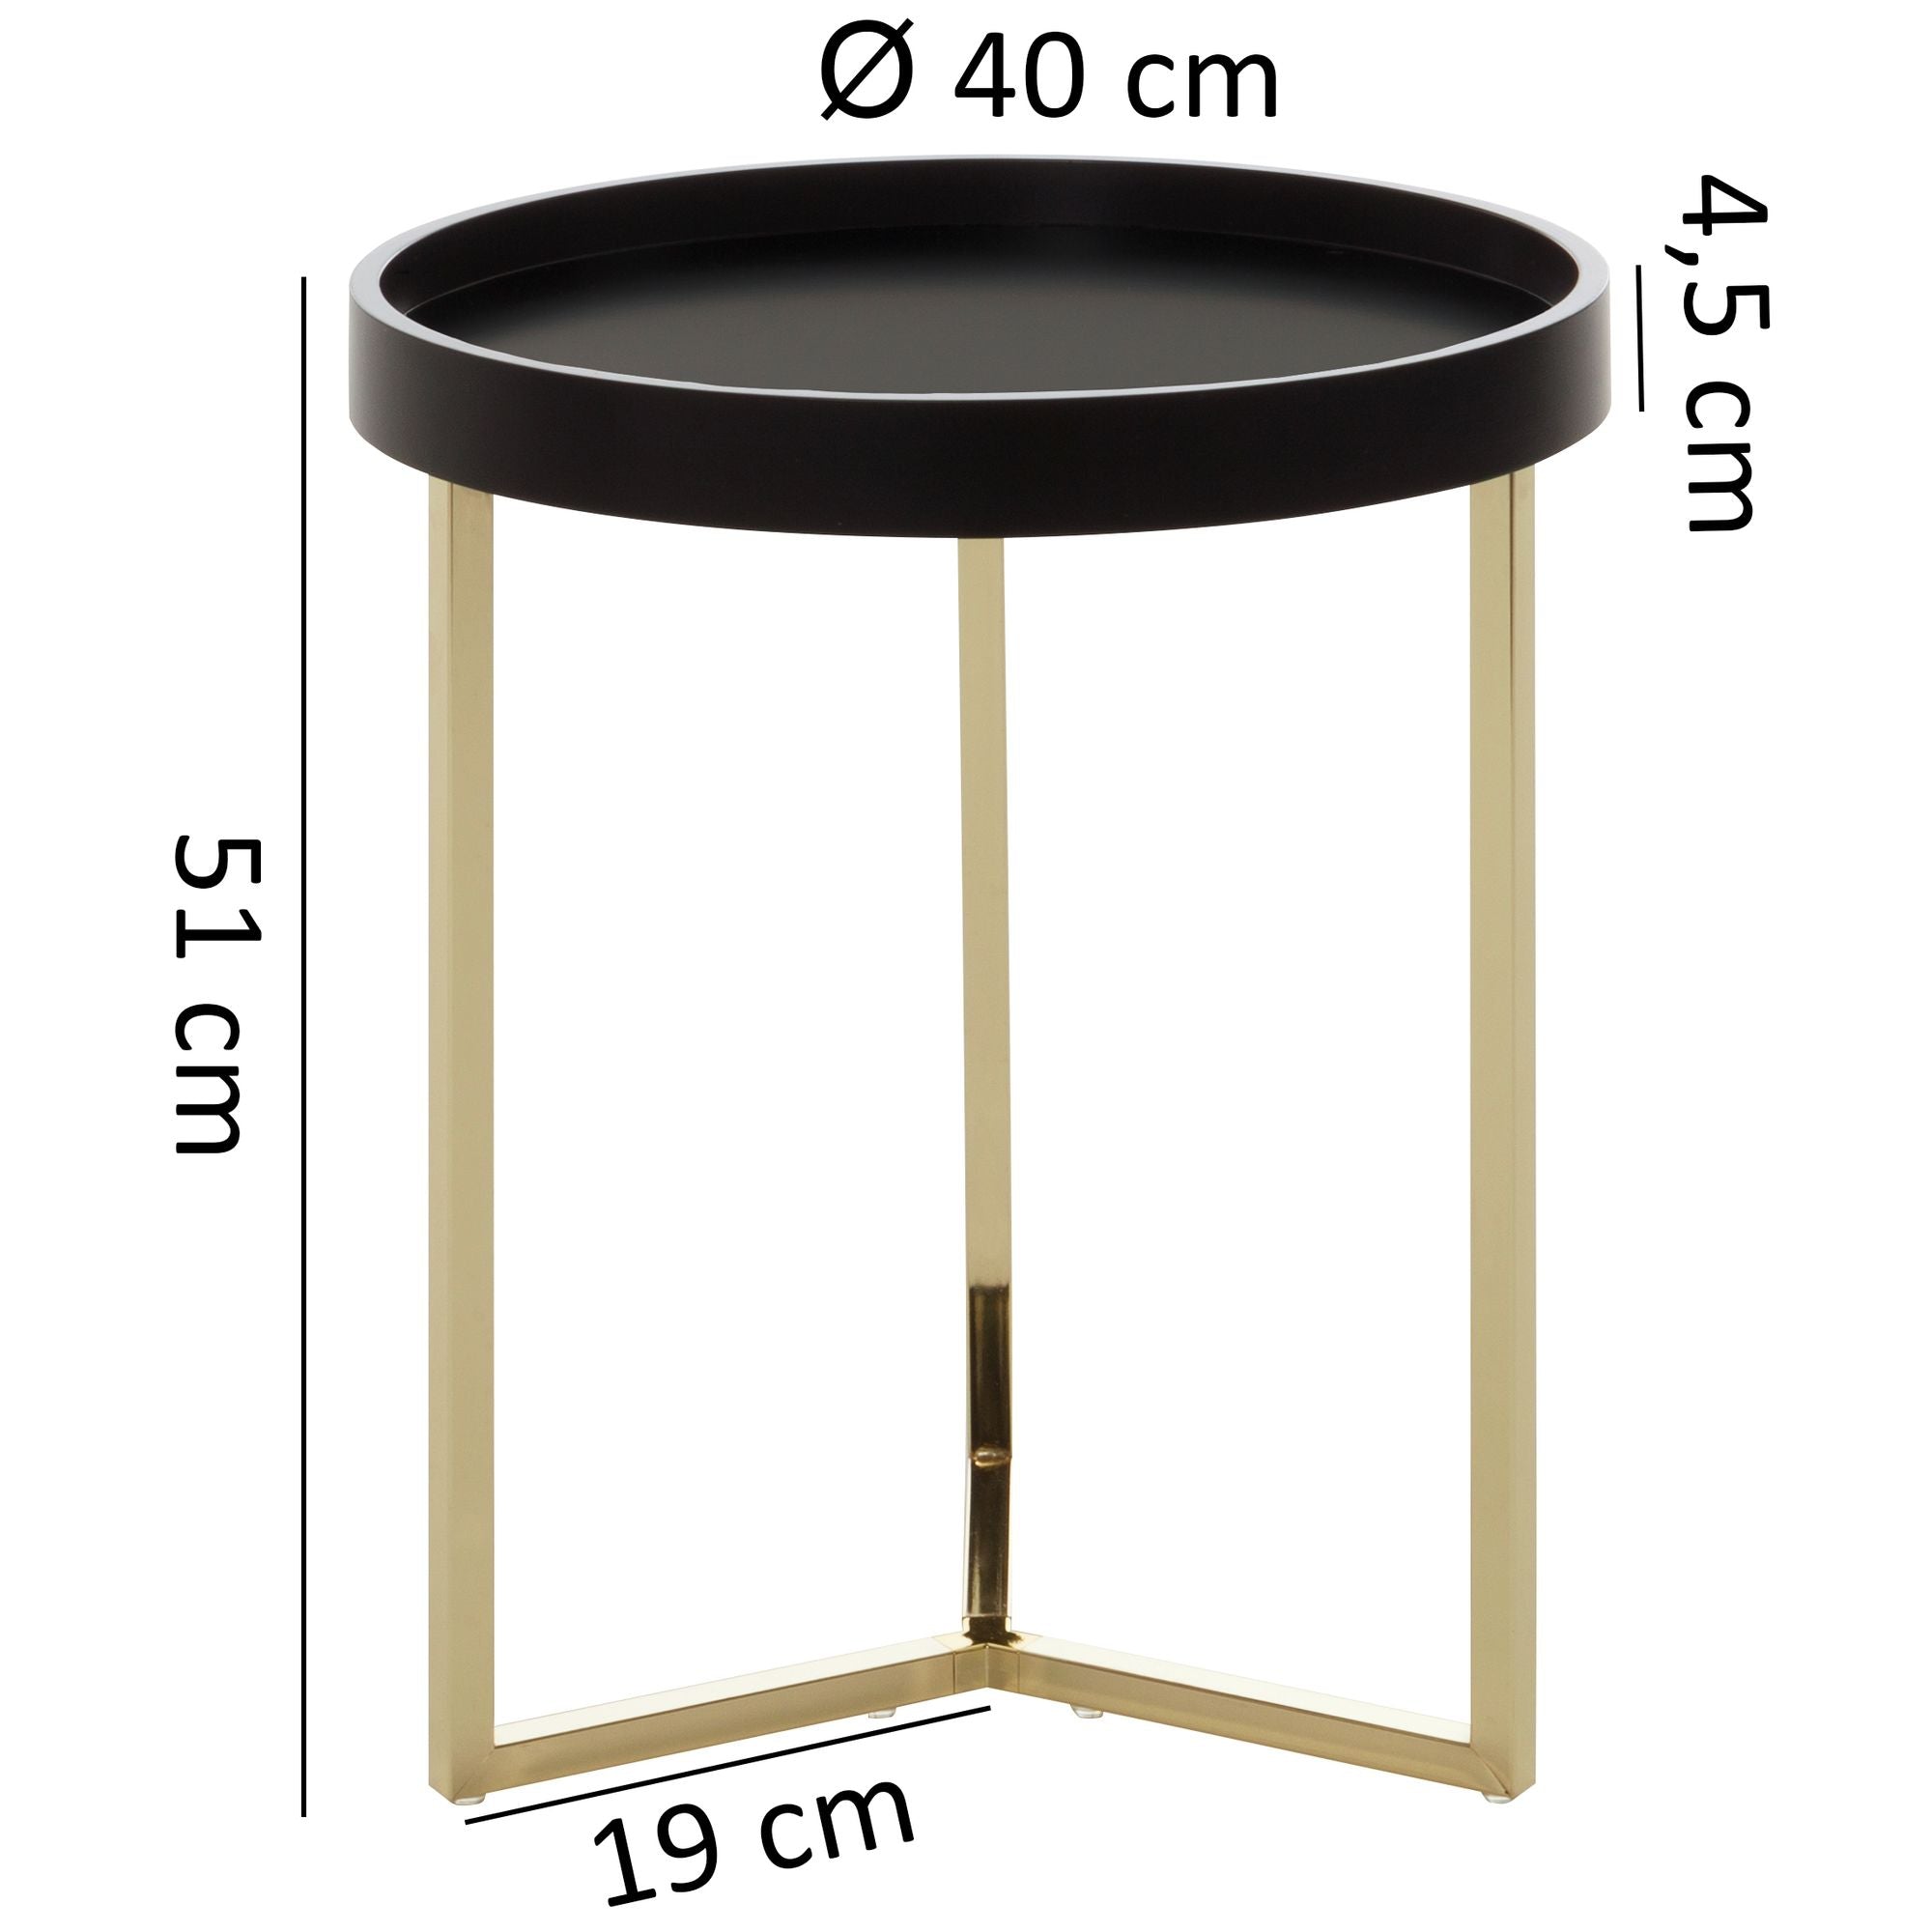 Table d'appoint Nancy's Asheboro - Table basse - Table d'appoint - Bois - Métal - Ø 40 cm - Noir - Or